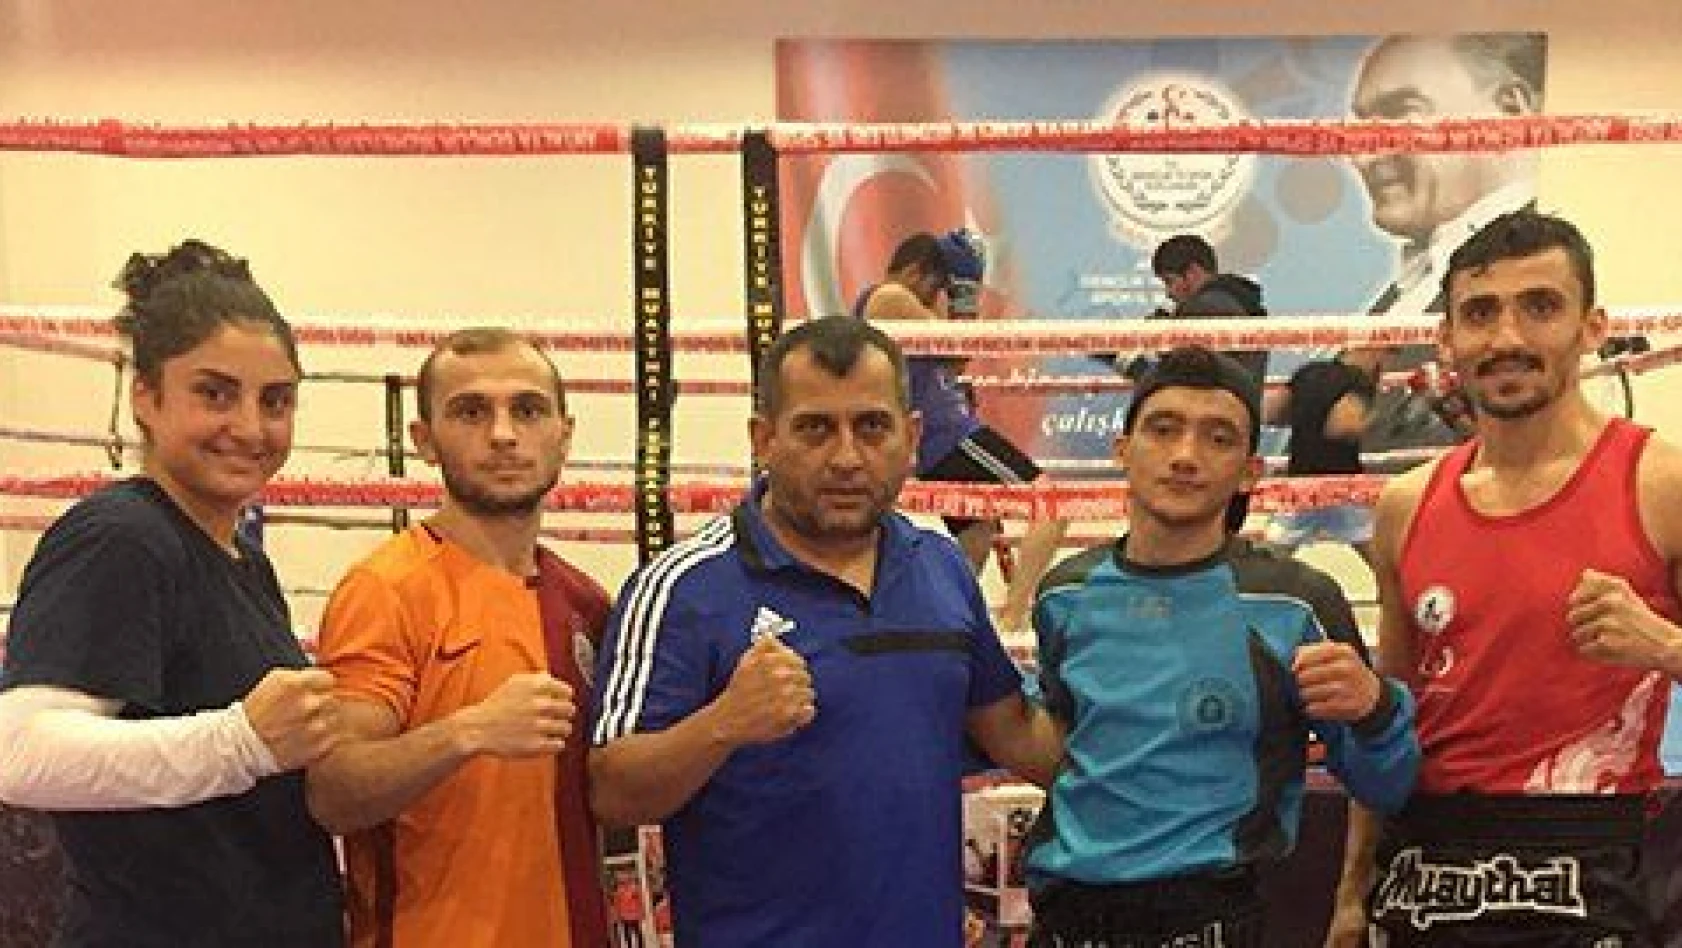 Kayserili 4 sporcu Muay Thai Dünya Şampiyonası'nda Türkiye'yi temsil edecek